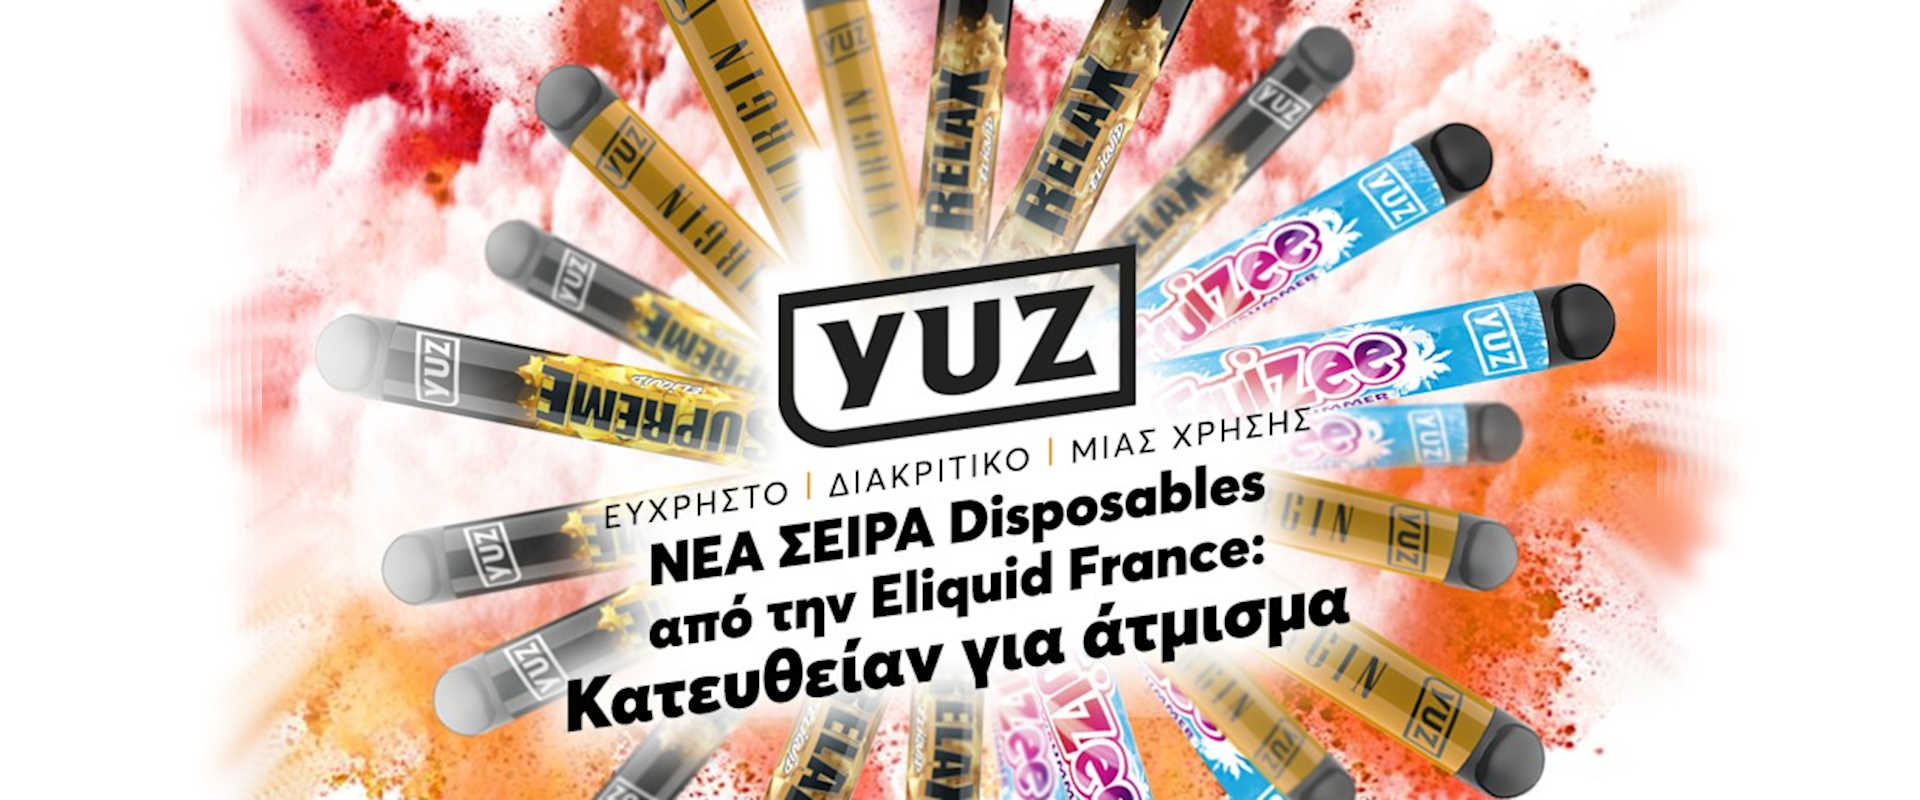 Eliquid-France-YUZ-Disposables-Banner